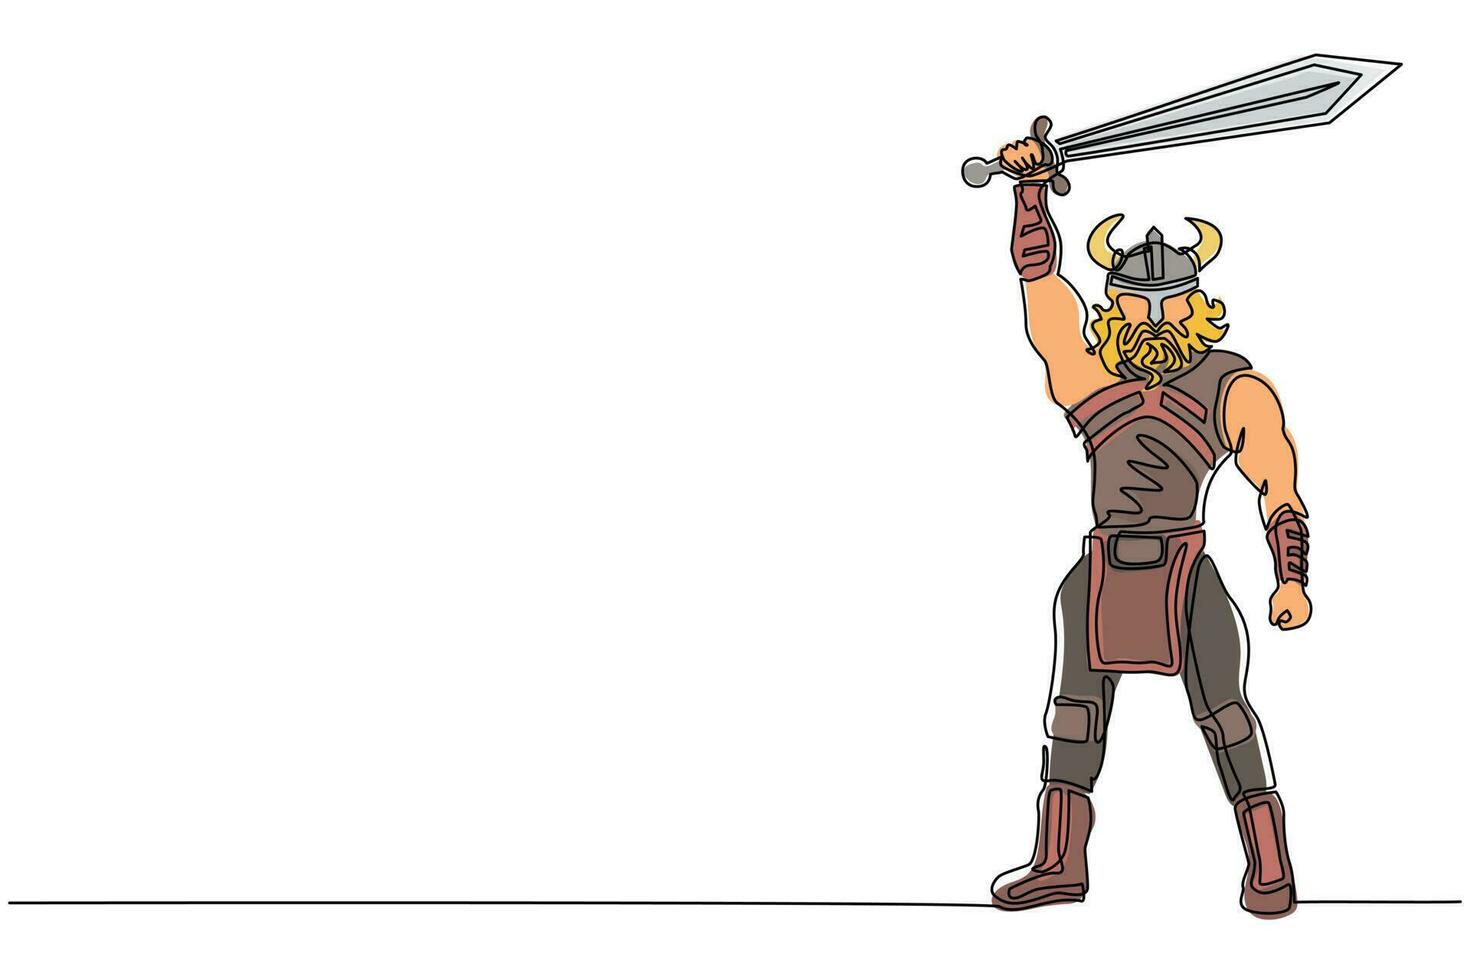 enkele doorlopende lijntekening Noordse man die zwaard in de lucht houdt. vector van krijger die viking oorlogspantser draagt. karakter uit de heidense en Scandinavische mythologie. ontwerpillustratie met één lijntekening